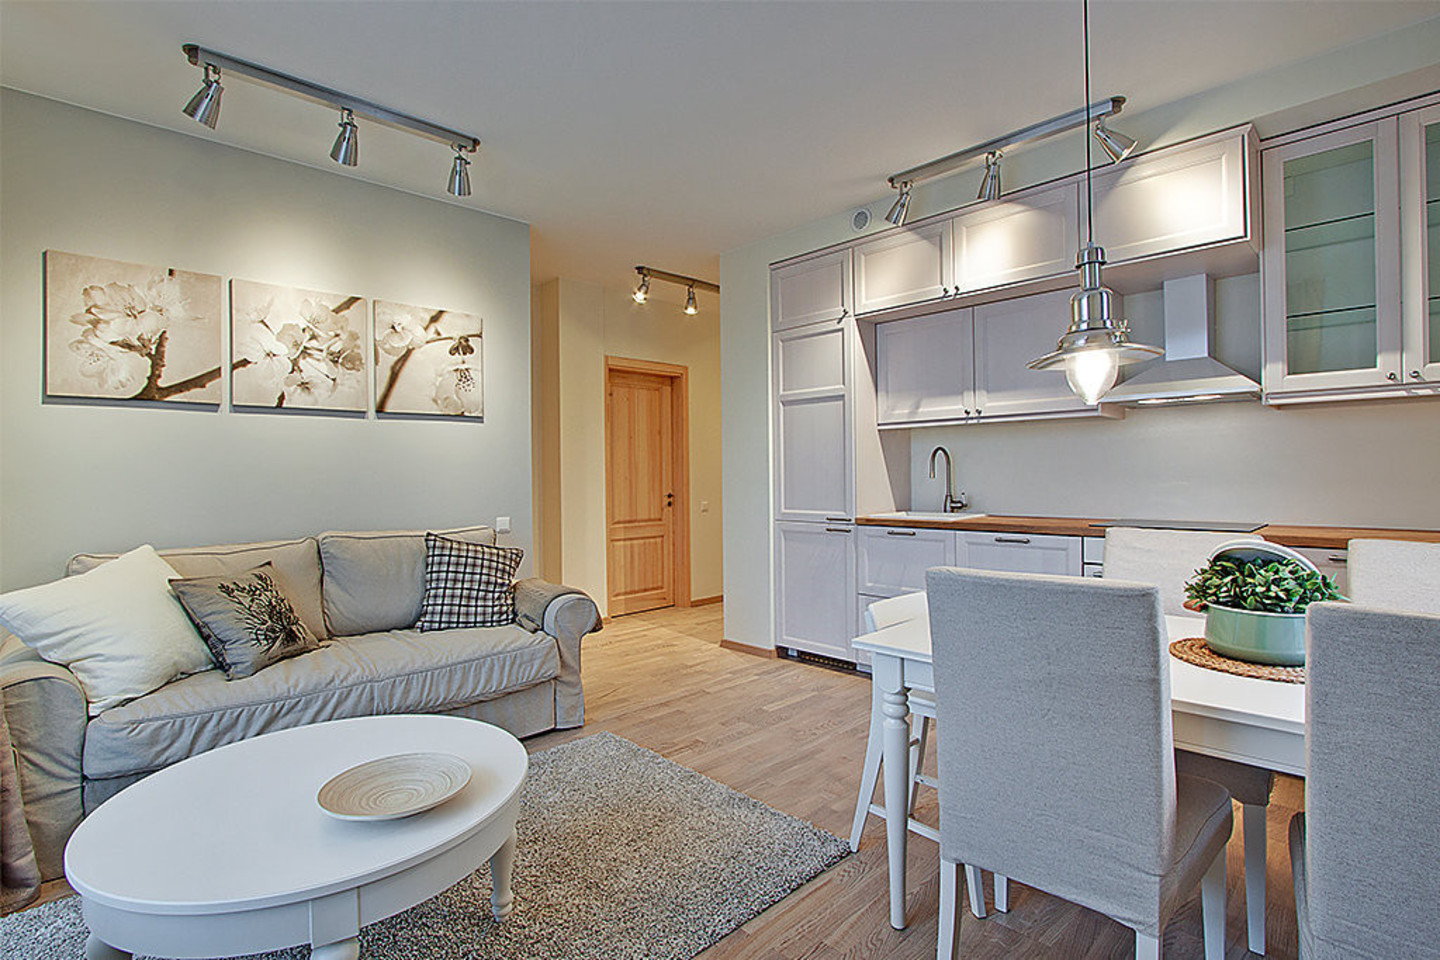 Jaukus ir šviesus būstas įrengtas vien „Ikea“ baldais ir aksesuarais.<br>R.Kotvickaitės nuotr.